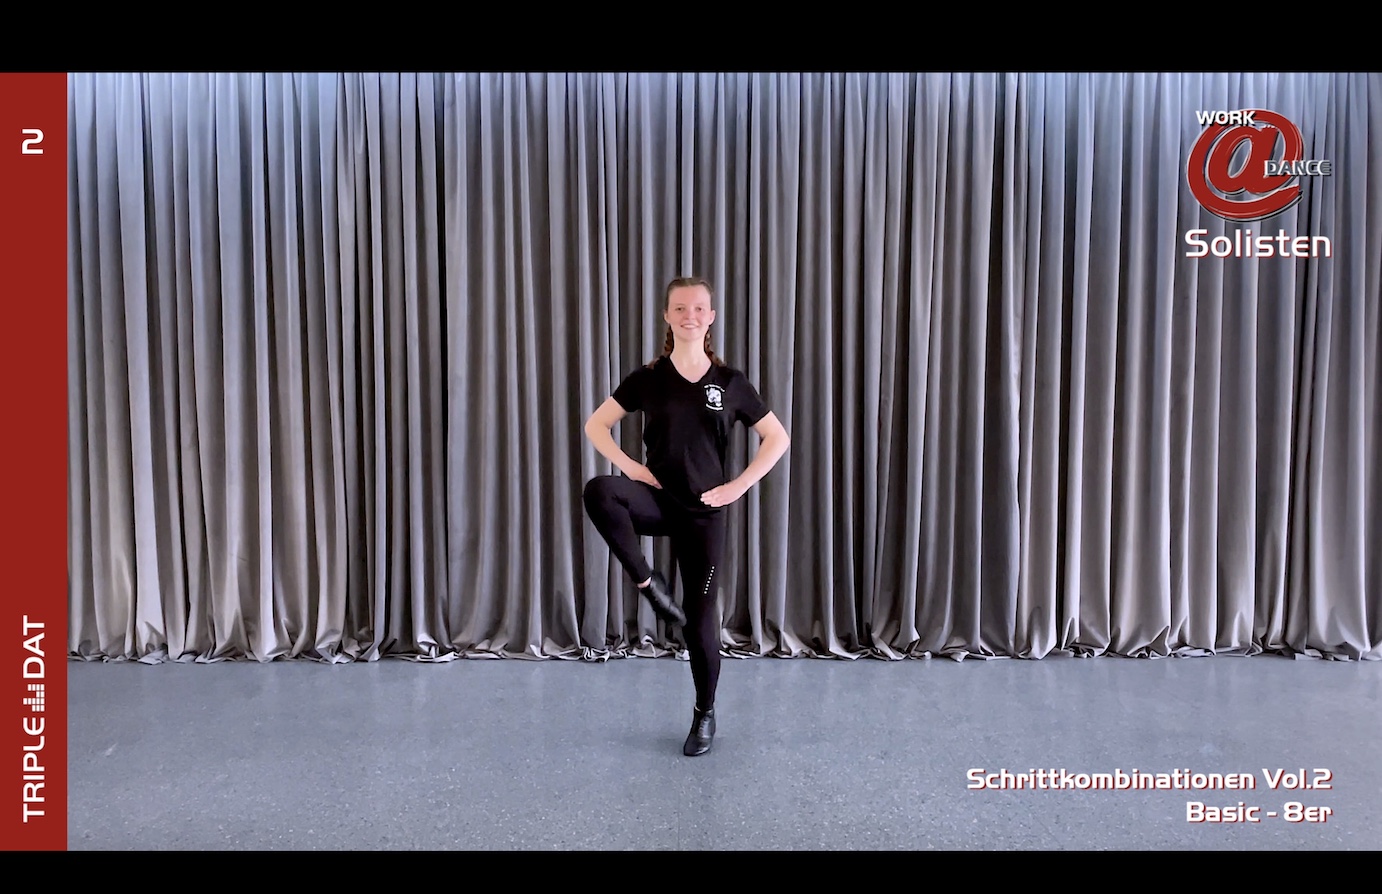 Work@Dance Solisten Schrittkombinationen 02 - Basic